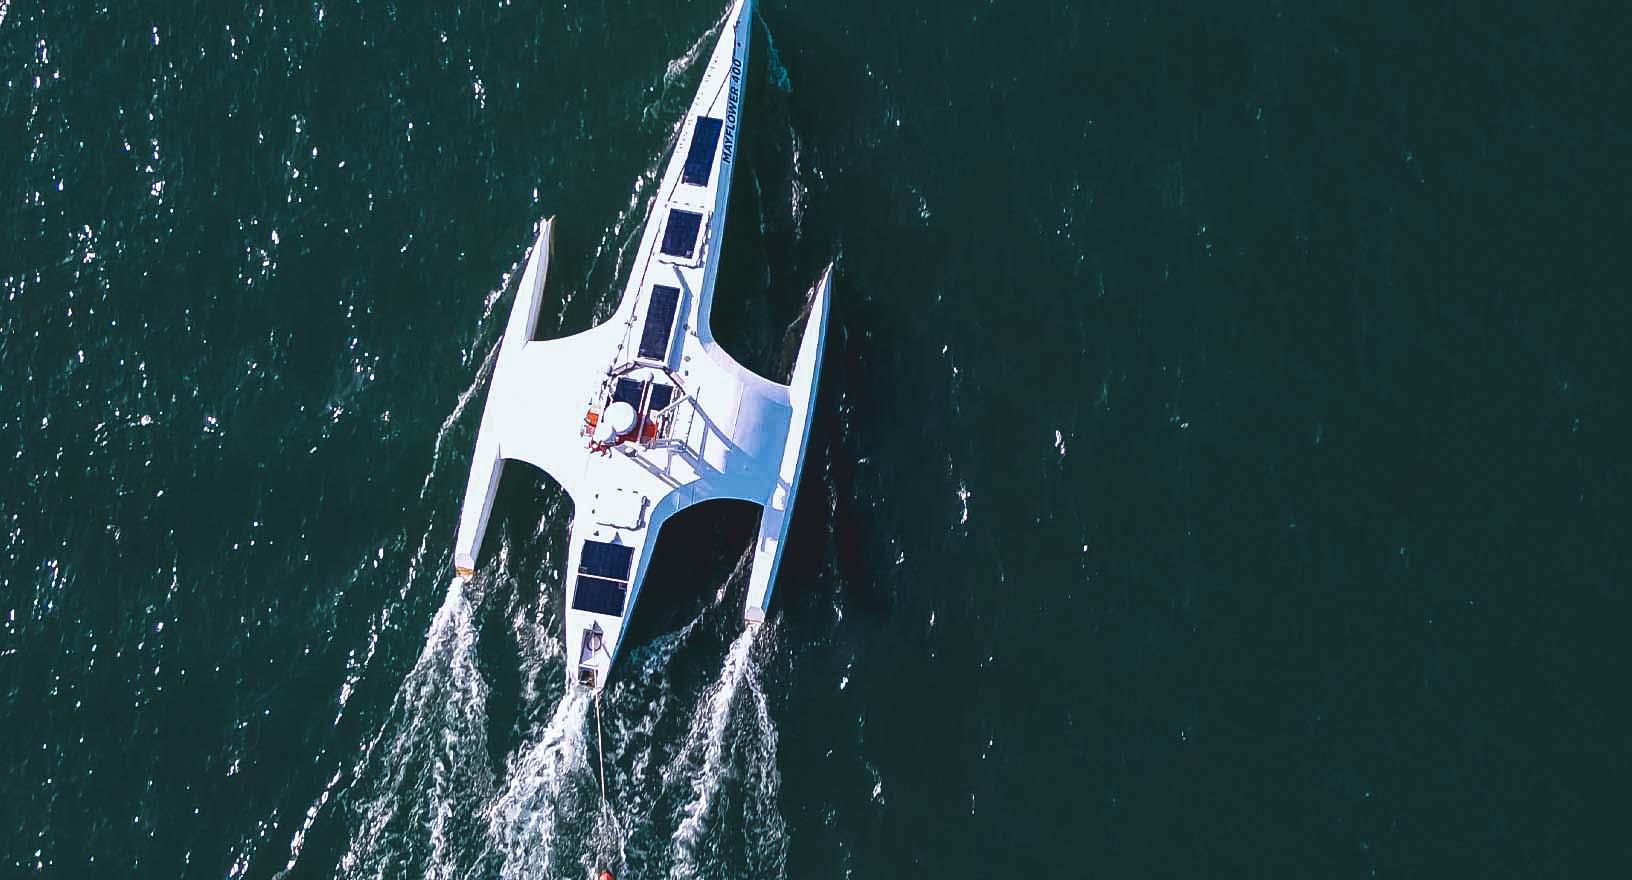 La nave autonoma Mayflower naviga in modo autonomo nelle verdi acque dell'oceano, dotata di tecnologie che consentono un'autonomia garantita